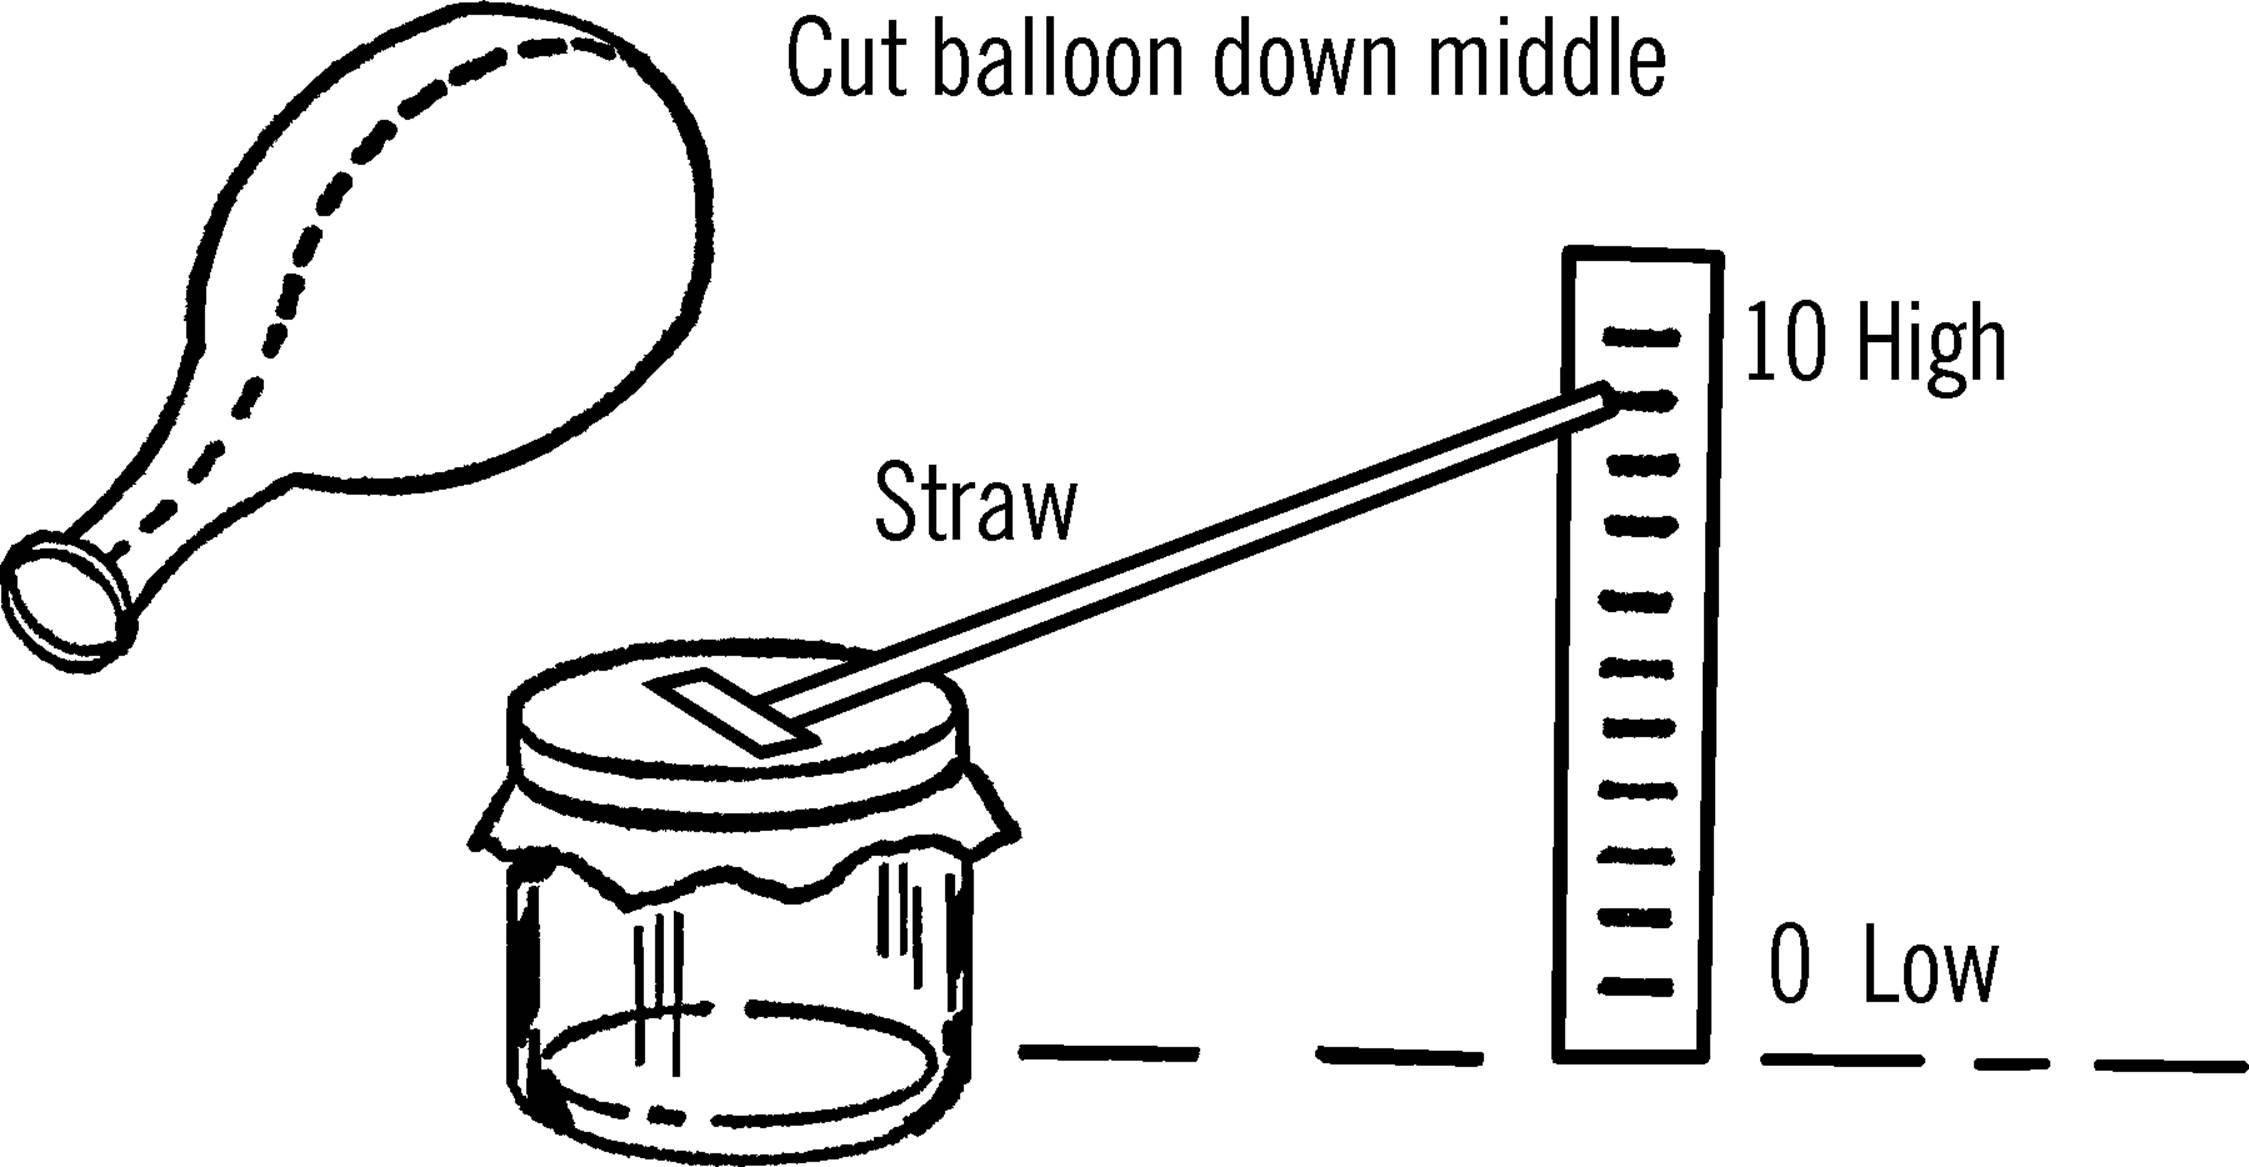 Balloon barometer.